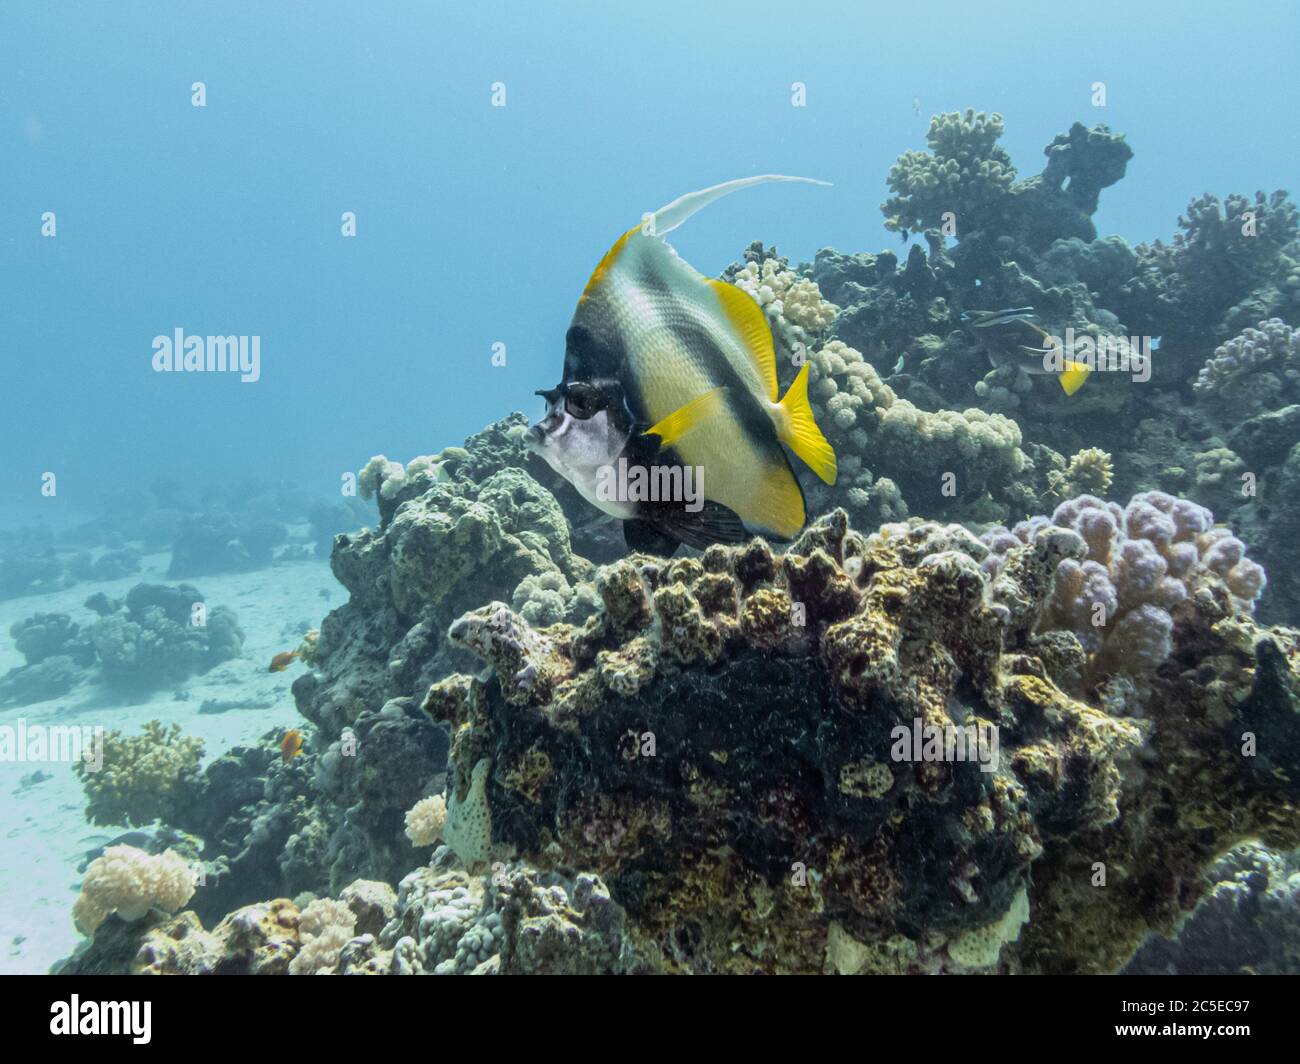 Idolo moresco, Zanclus cornutus, presso una barriera corallina del Mar Rosso vicino a Hurghada, Egitto. Acque blu e specie di corallo duro Foto Stock